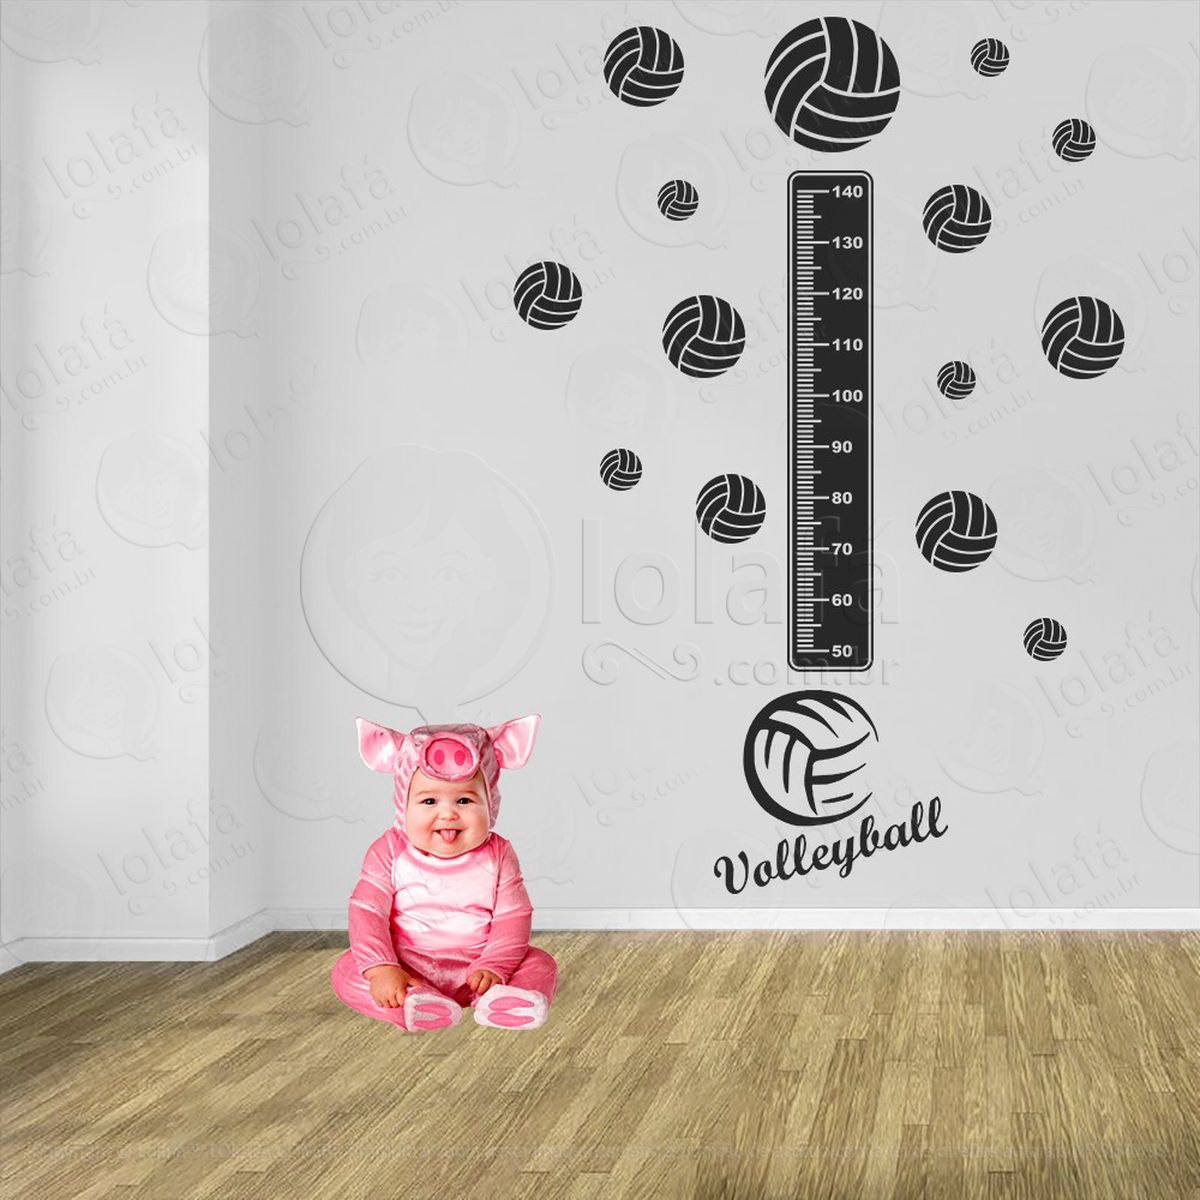 voleibol e bolas de vôlei adesivo régua de crescimento infantil, medidor de altura para quarto, porta e parede - mod:472